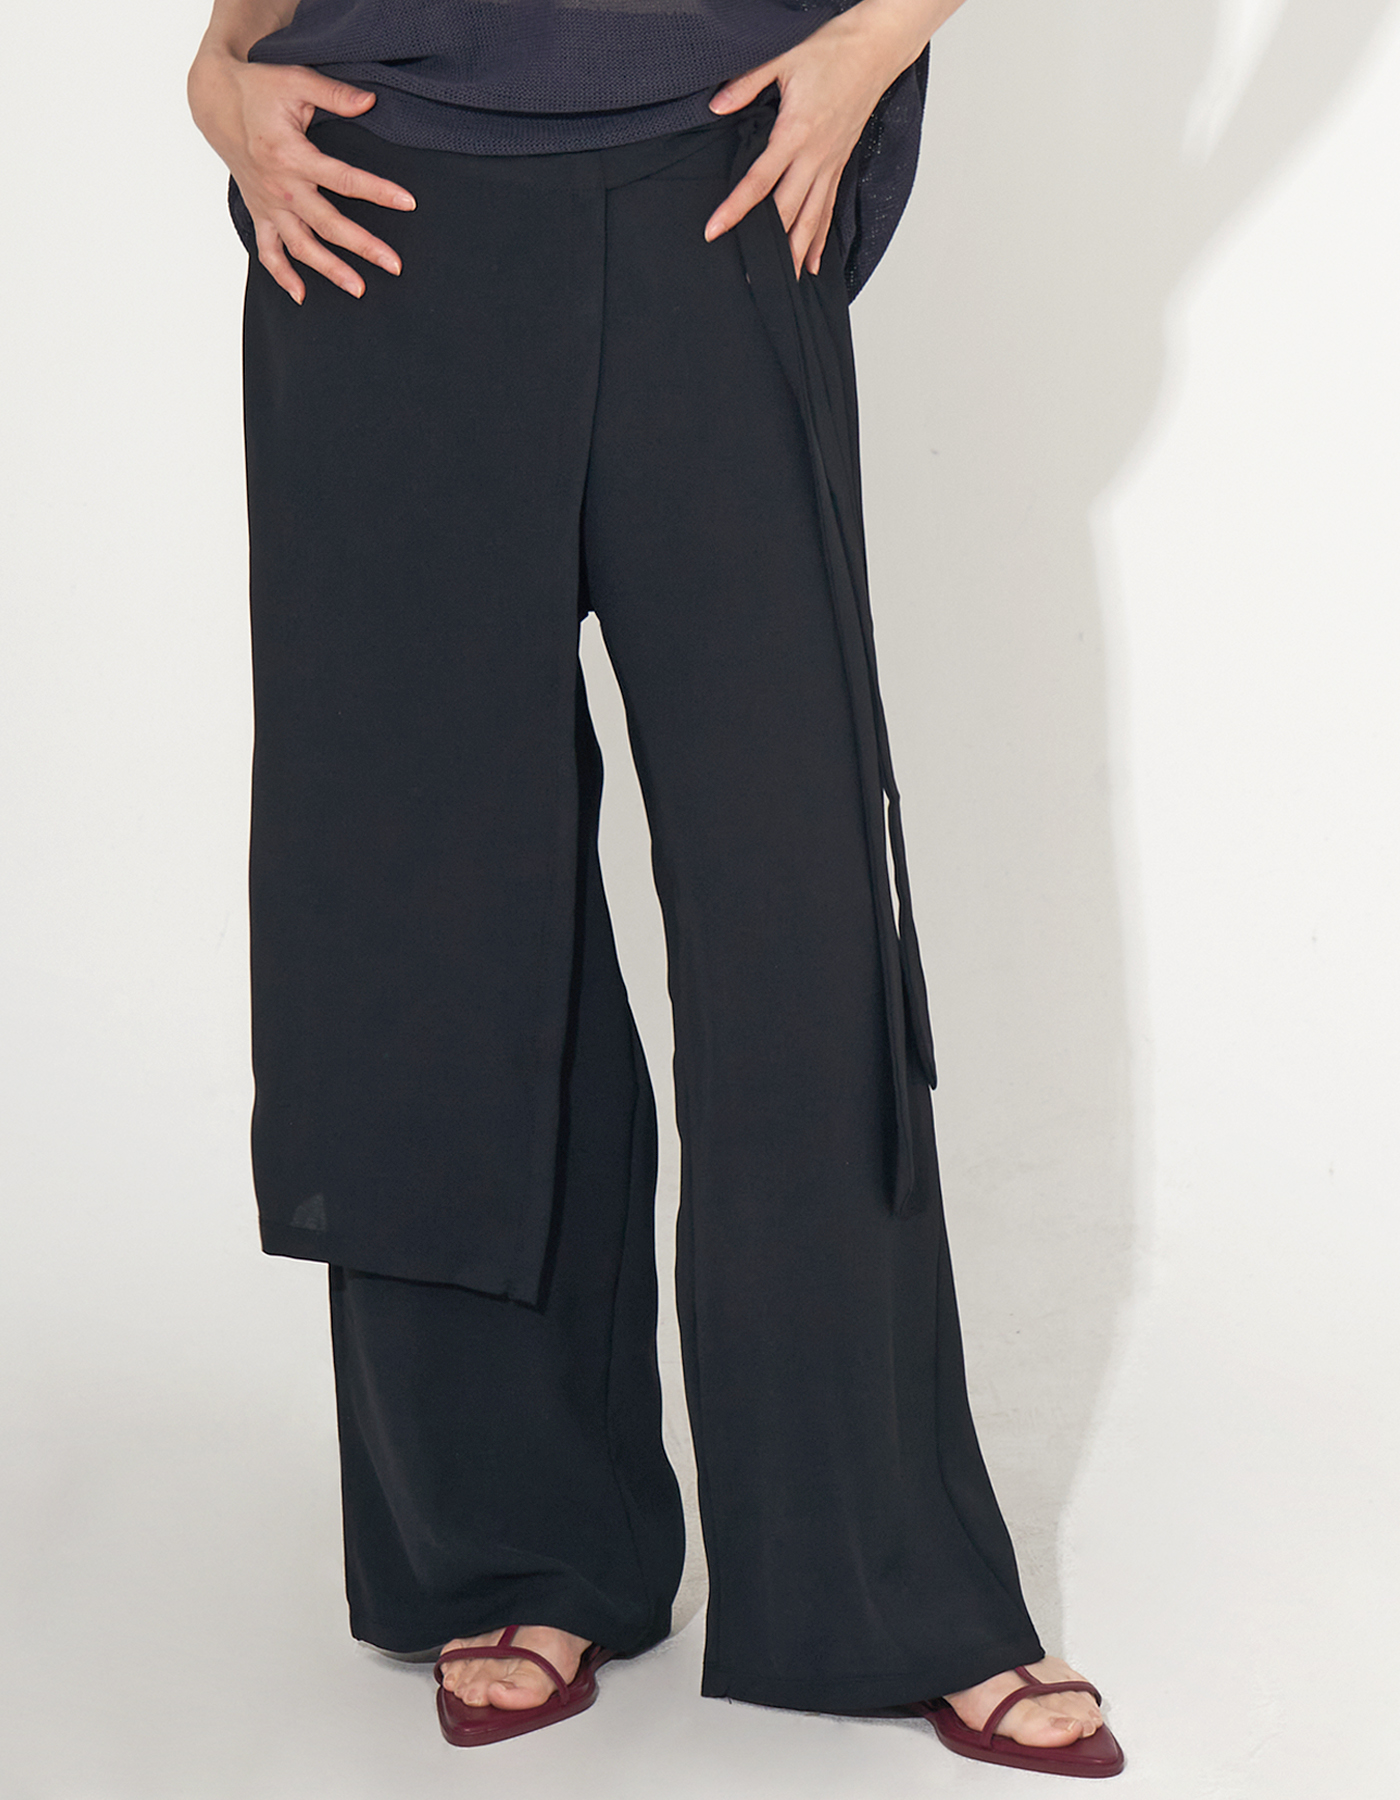 Lap maxi skirt slacks (Black)